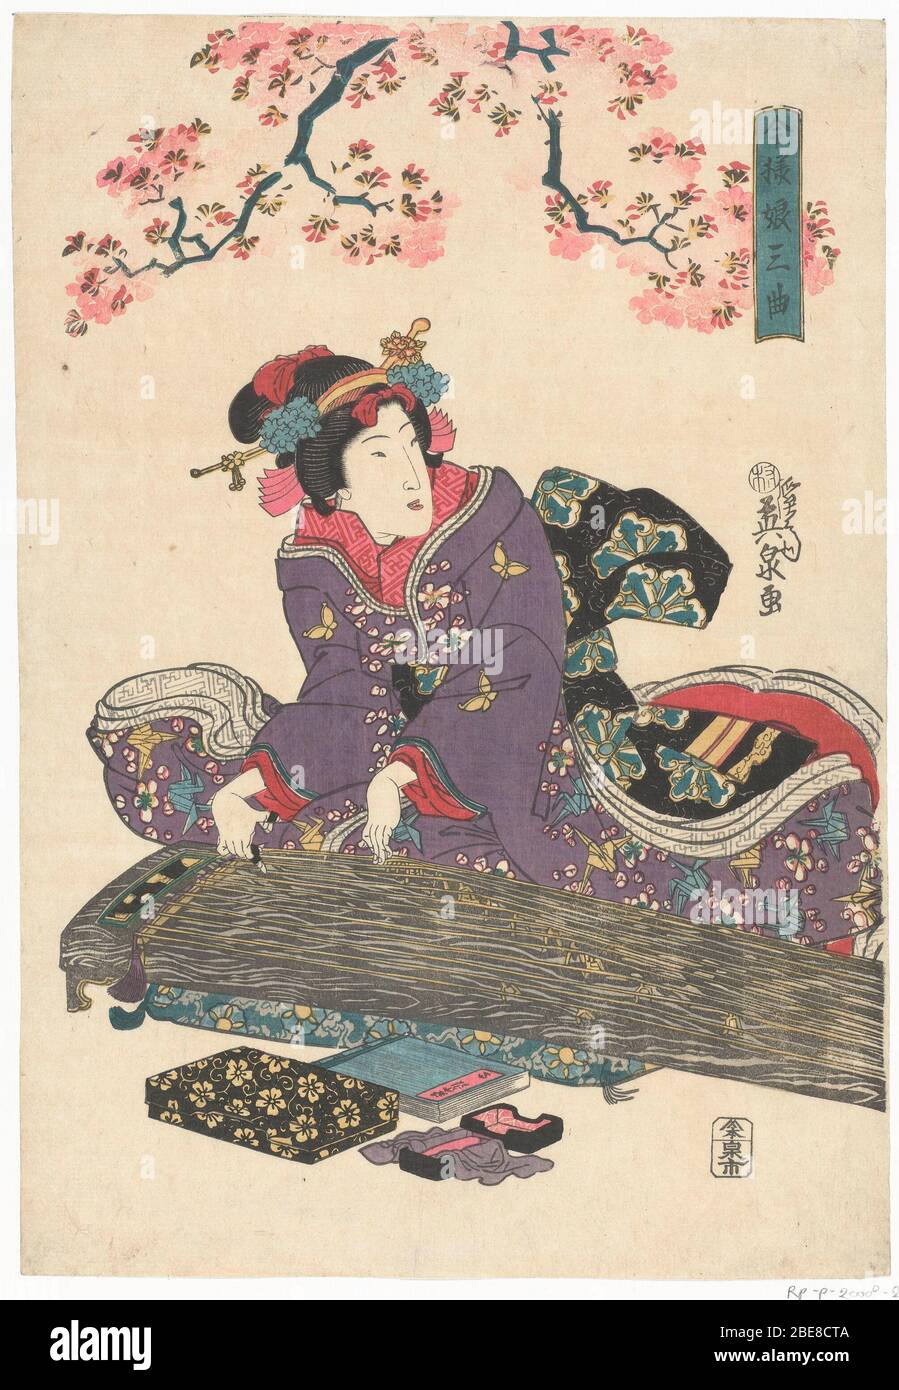 Bijn met koto; Nederlands: Geisha, in paarse kimono met vlinder en kraanvogel motief, de koto bespelend onder roze bloesemtakken. Label mentioned on object Keisai Eisen (1790 - 1848), ca. 1845, kleurenhoutsnede;